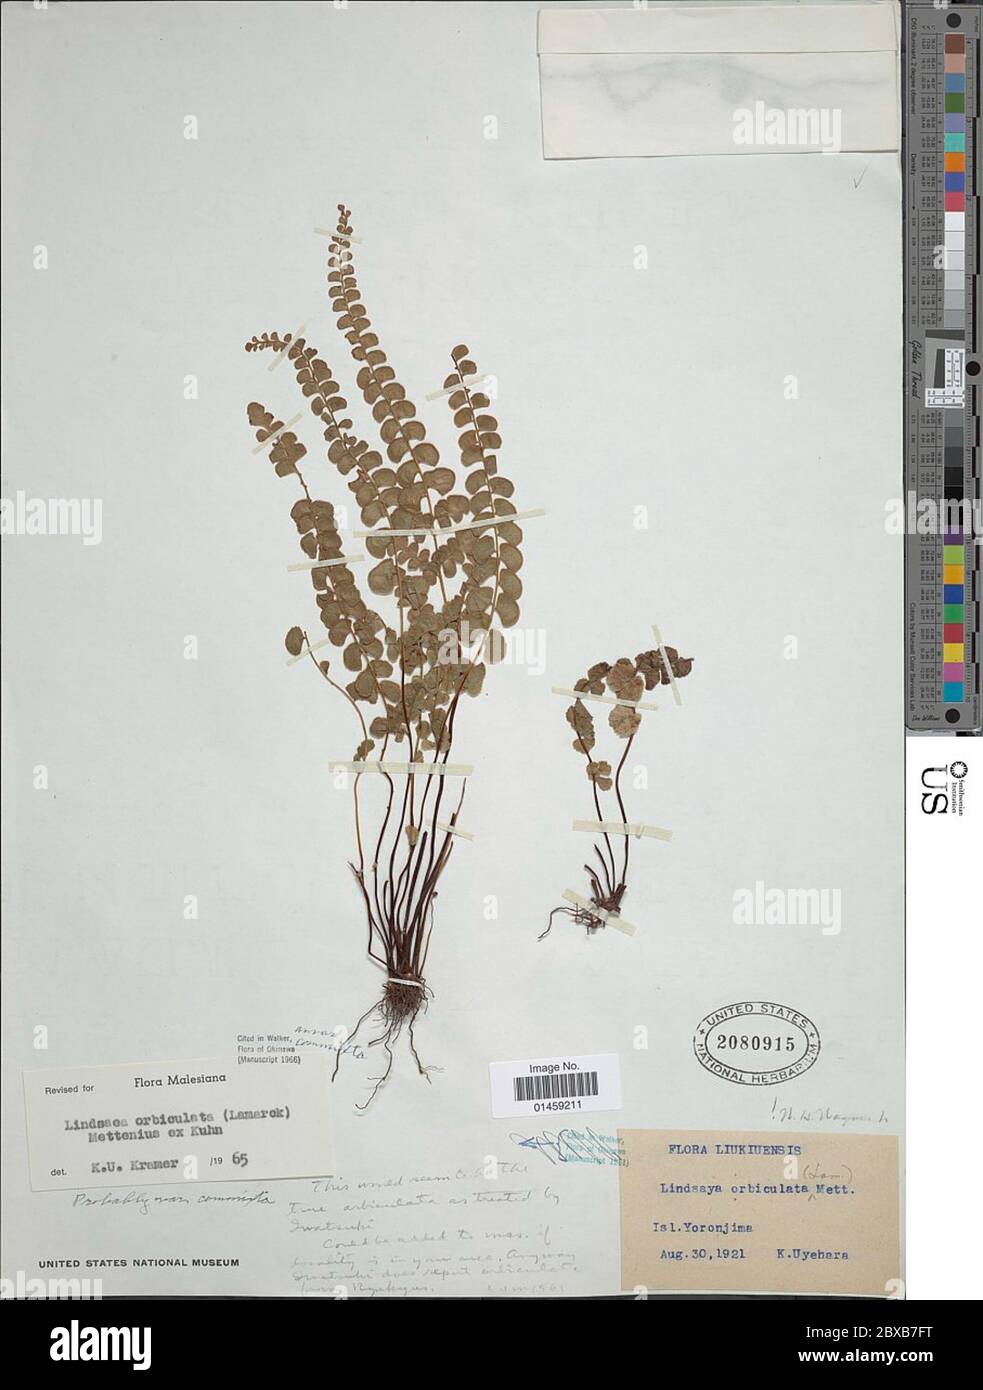 Lindsaea orbiculata var commixta Tagawa KU Kramer Lindsaea orbiculata var commixta Tagawa KU Kramer. Stock Photo